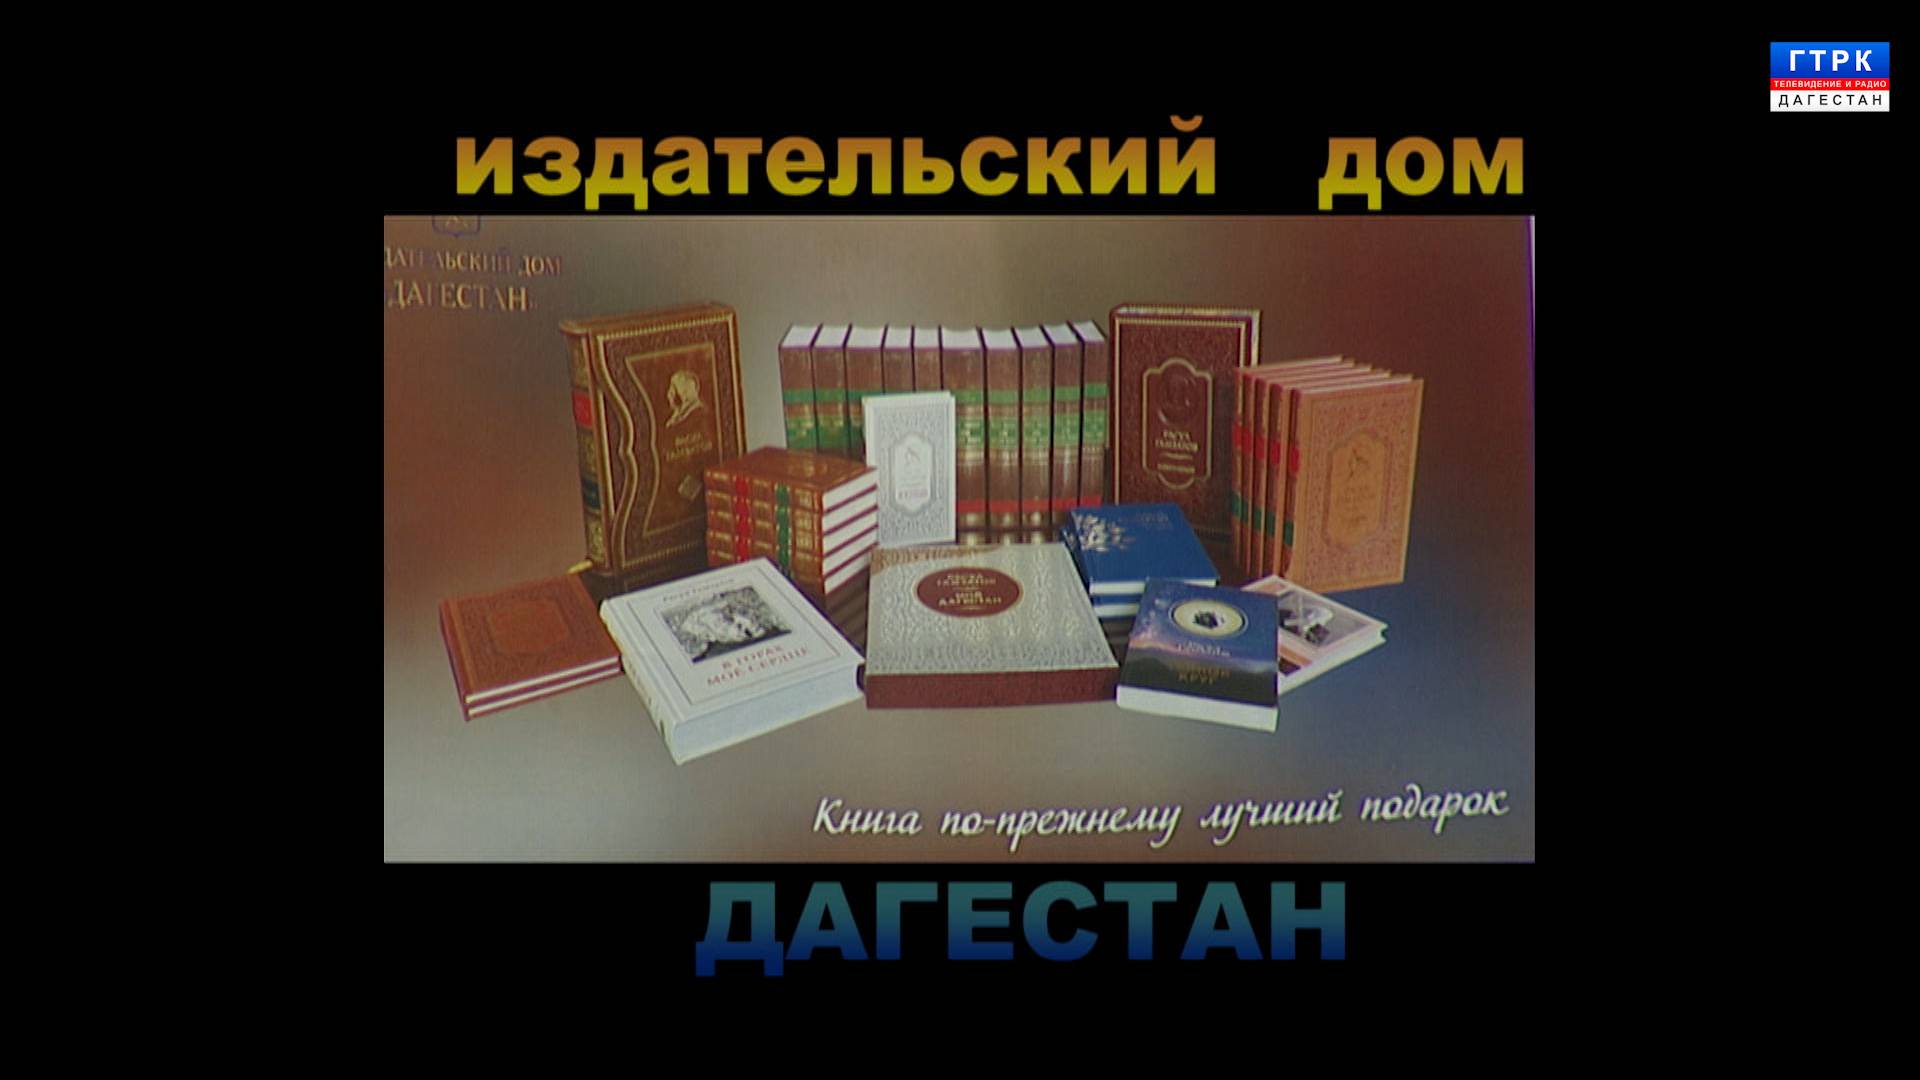 Издательский дом "Дагестан" 2 часть 31.07.24 г